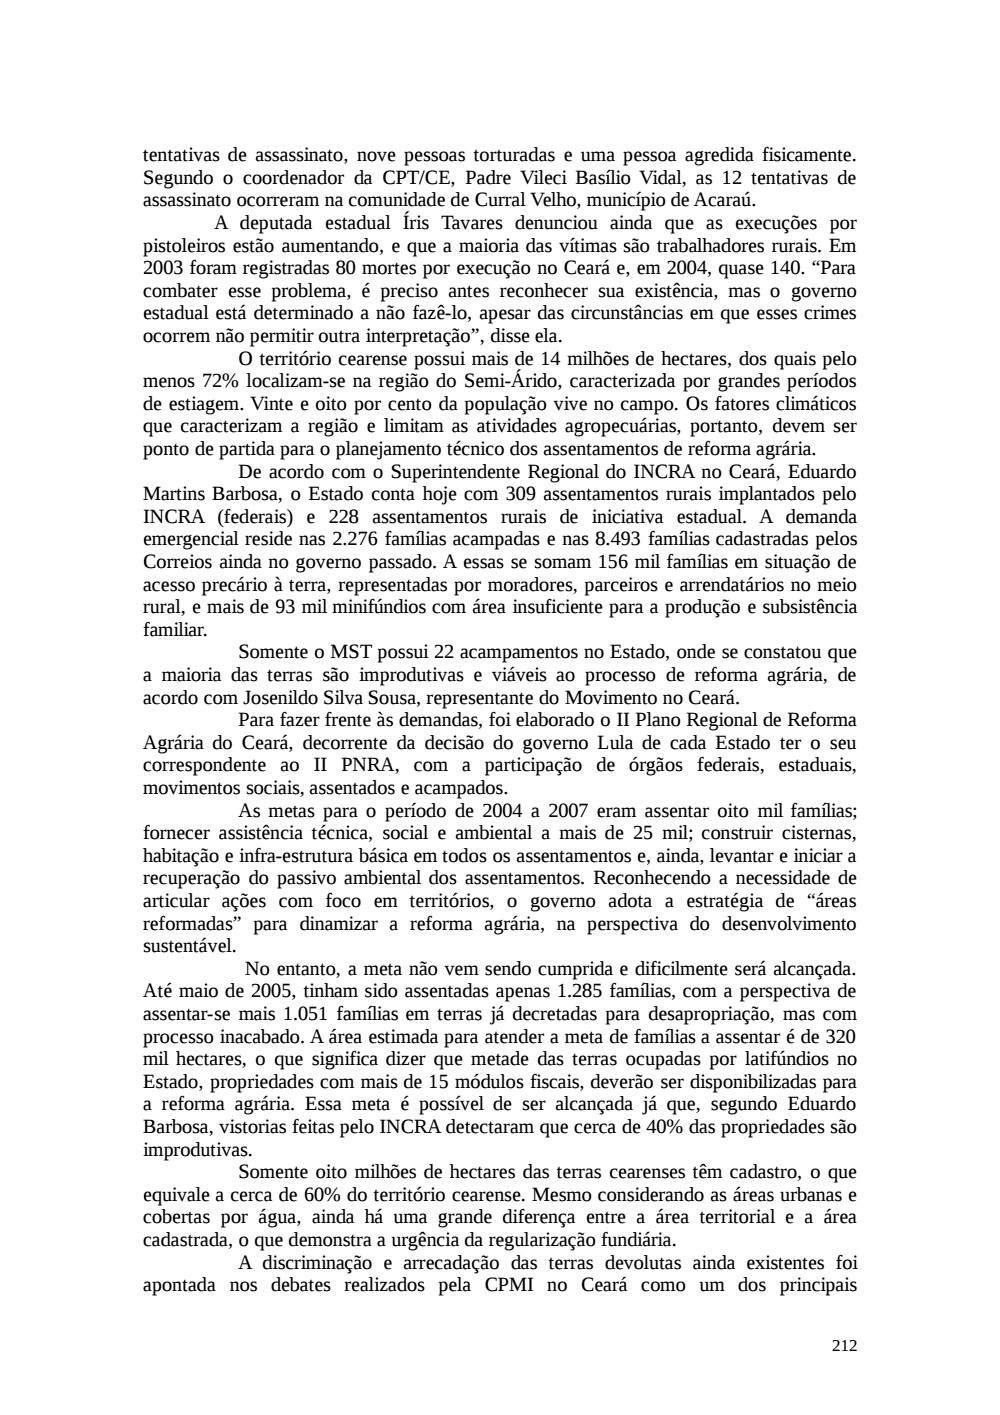 Page 212 from Relatório final da comissão